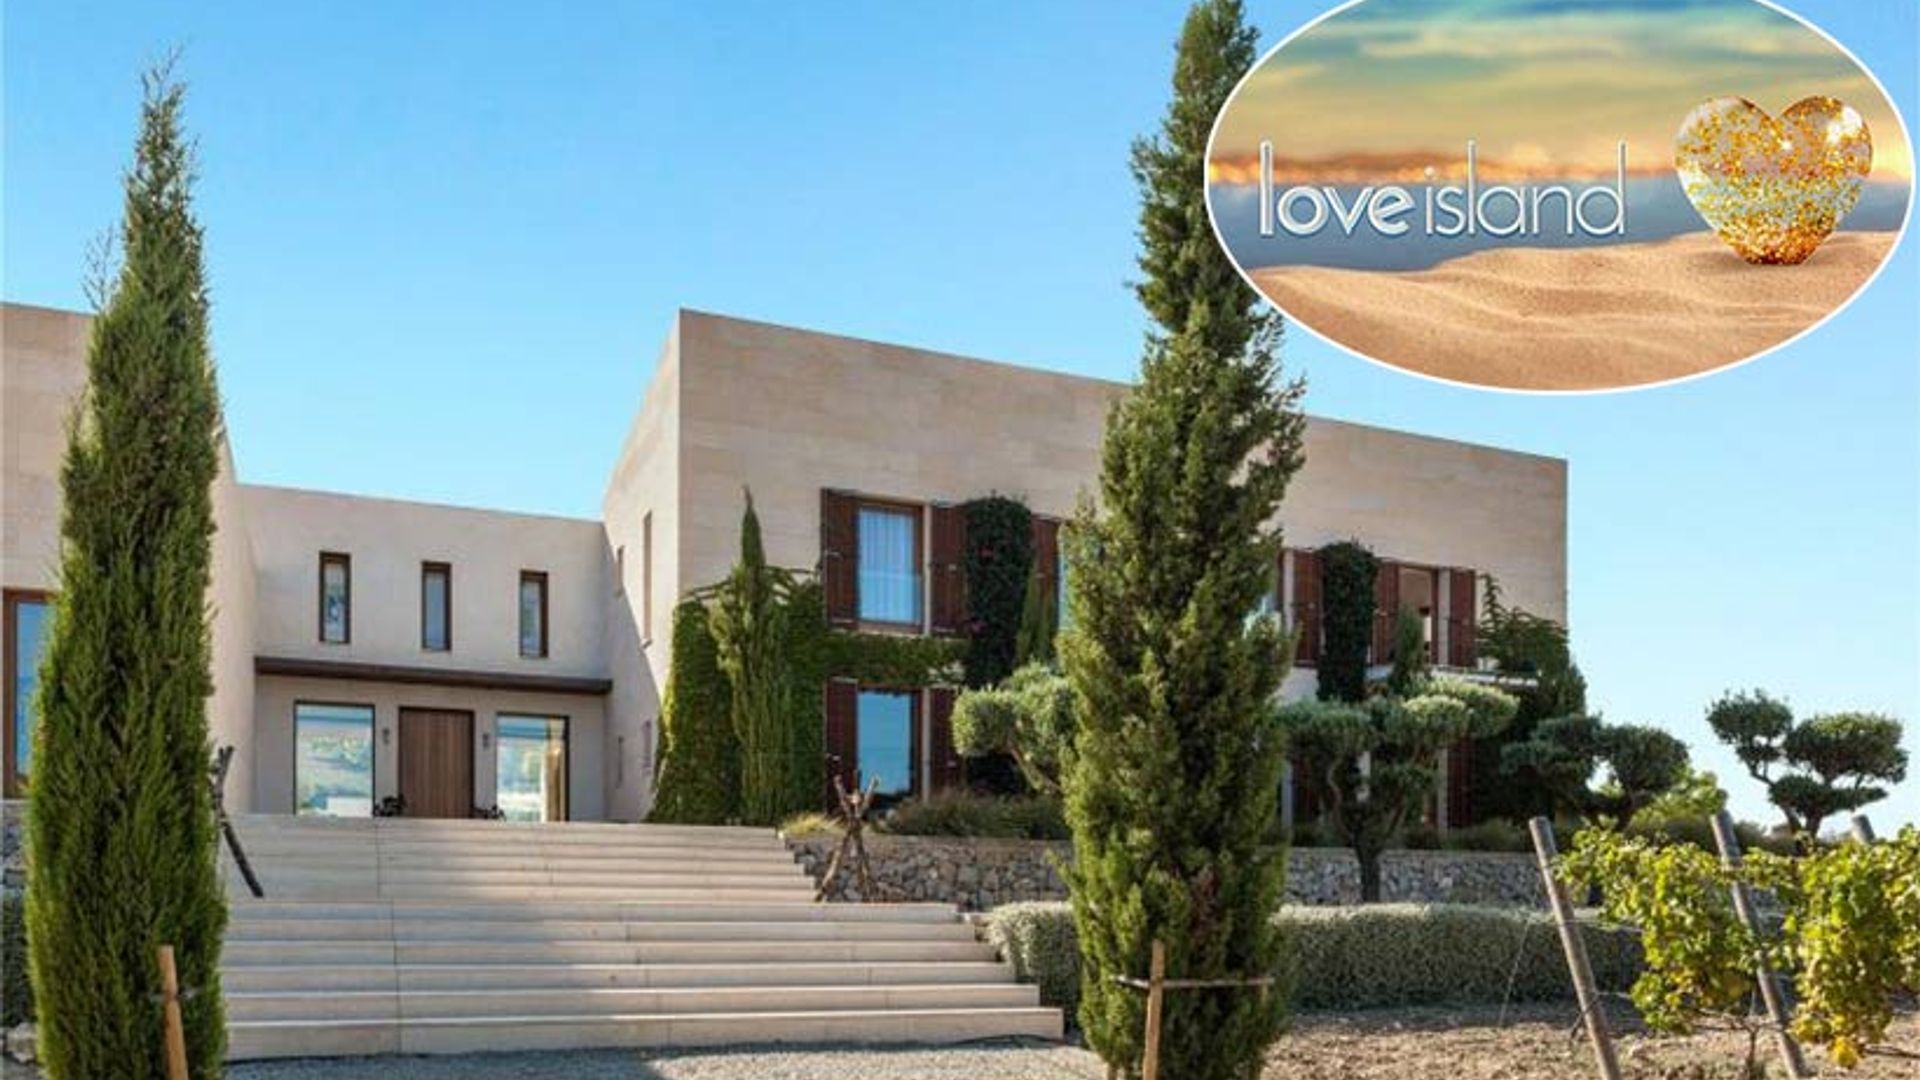 Love Island villa 1